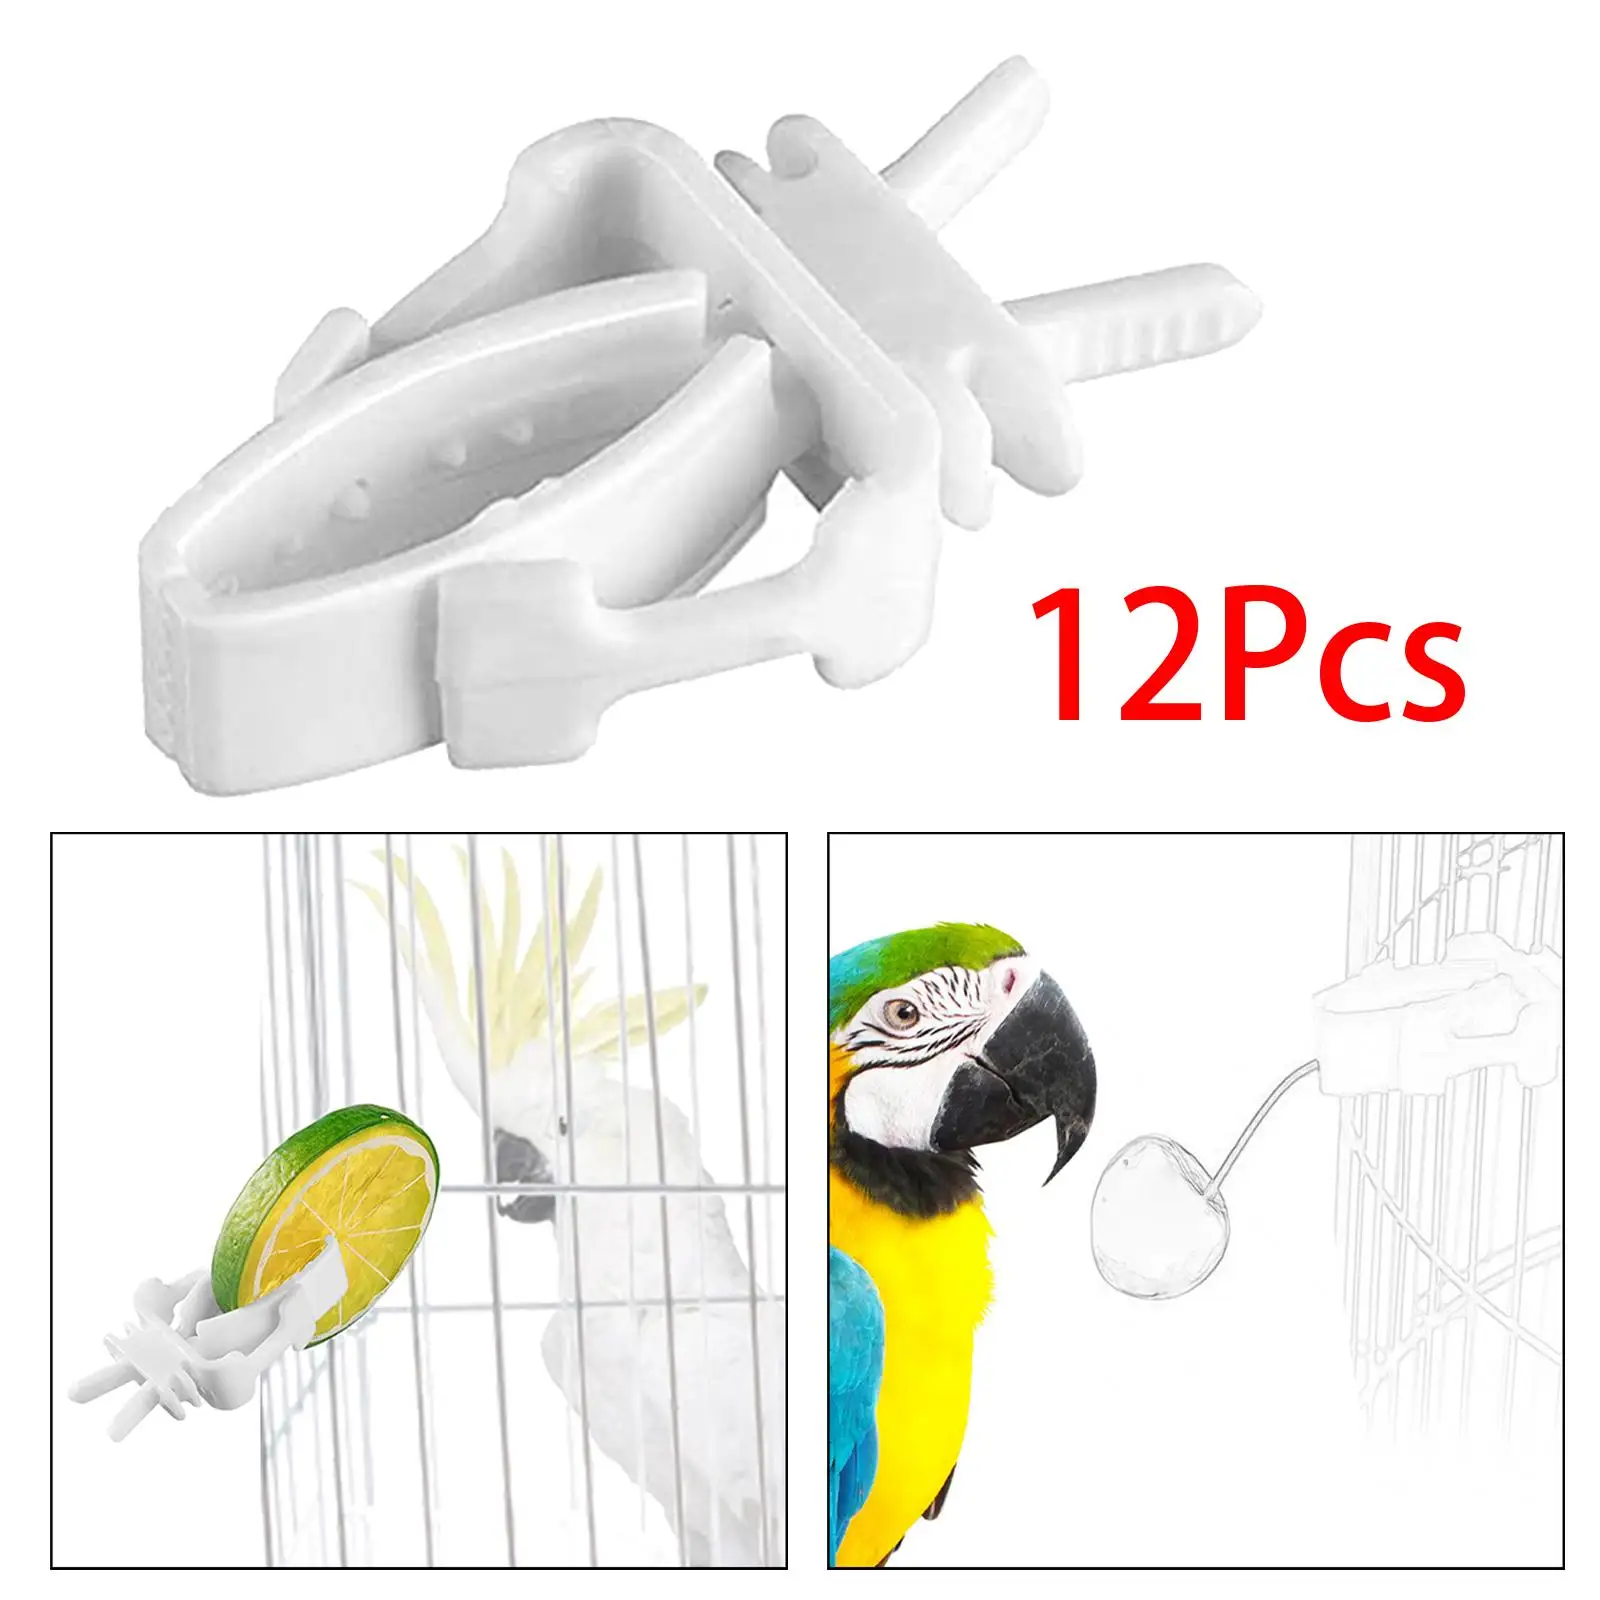 12Pcs Bird Feeding Clips Bird Cage Feeder Clip for Parrot Parakeet Cockatiel